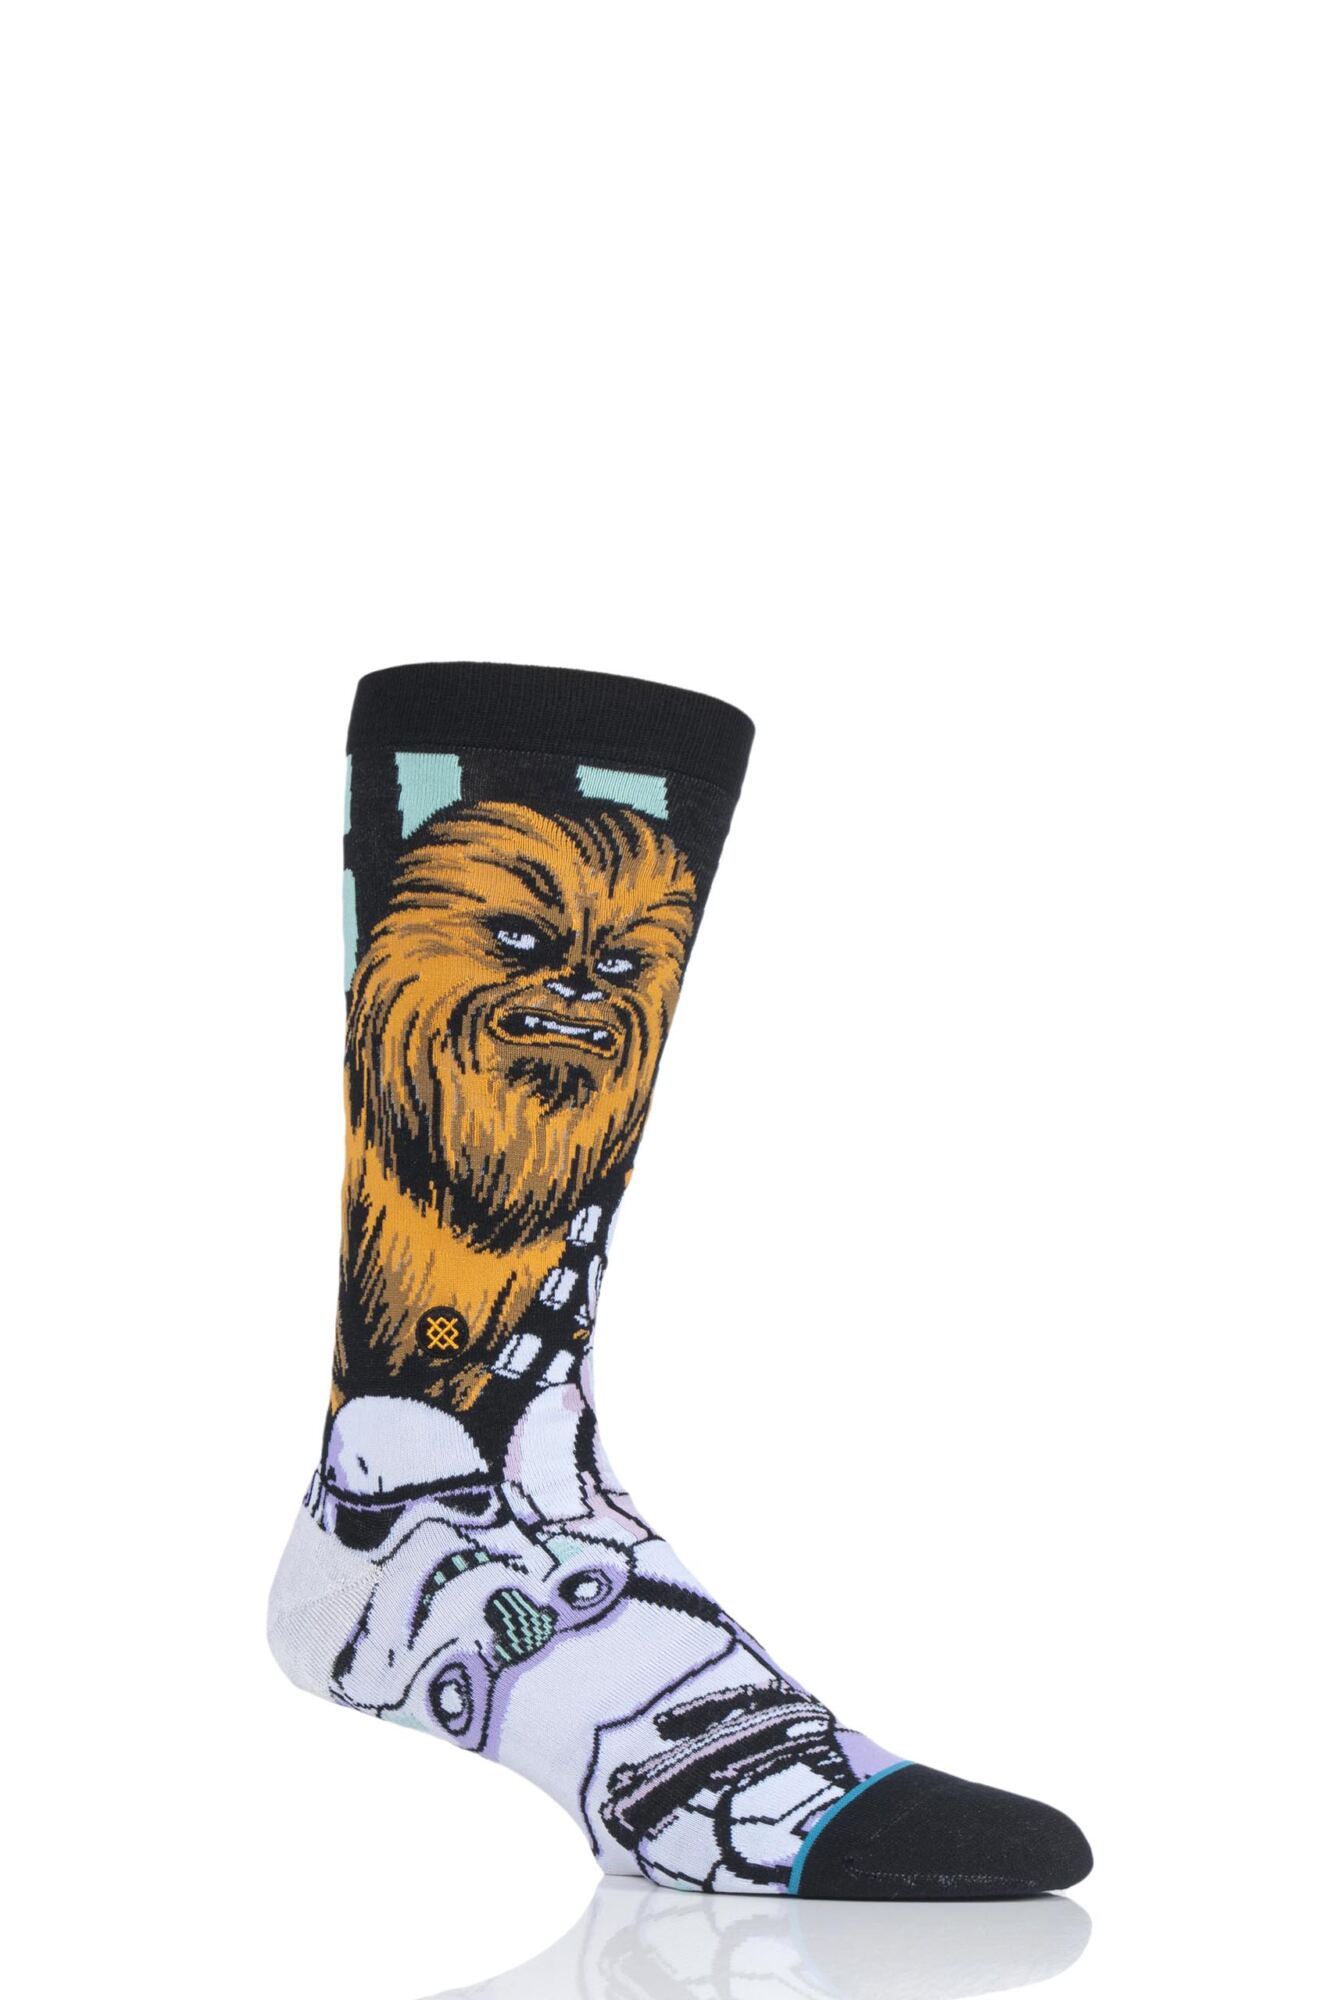 1 Pair Star Wars Warped Chewbacca Cotton Blend Socks Men's - Stance